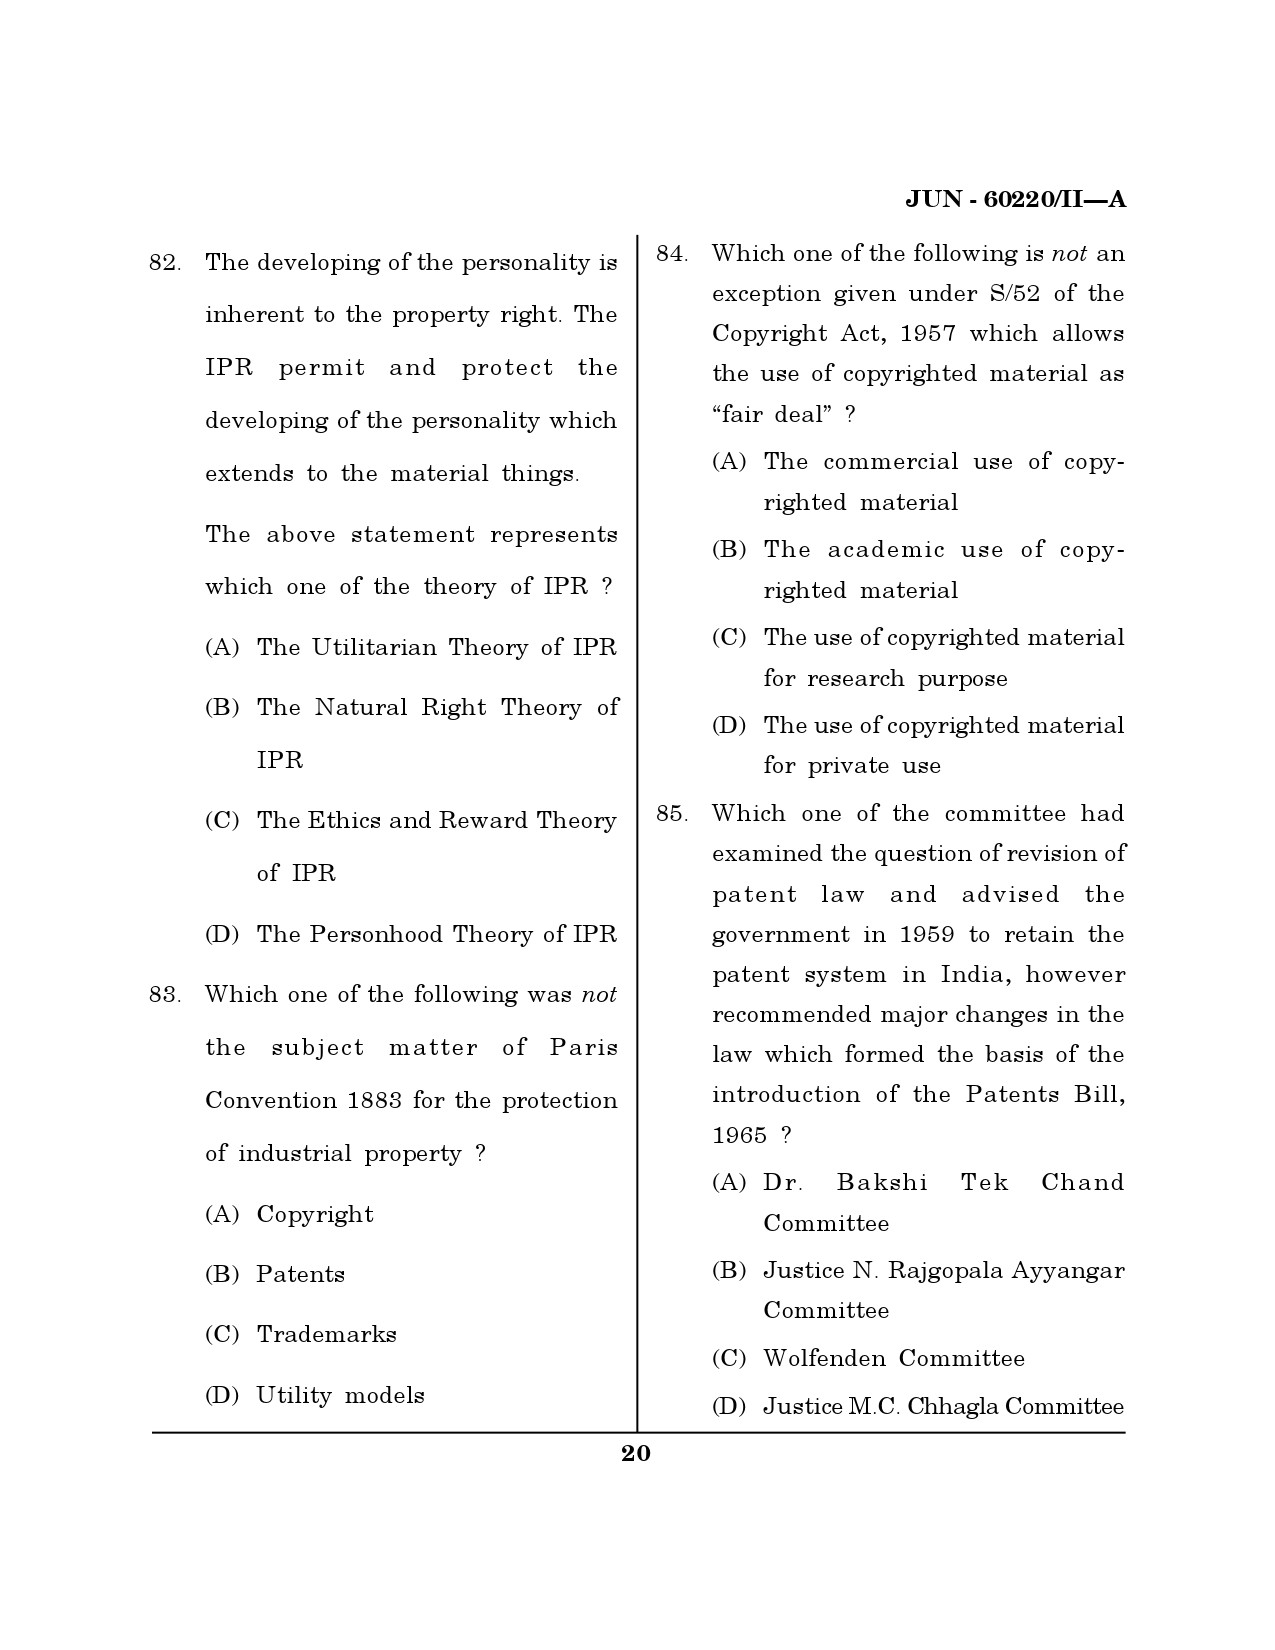 Maharashtra SET Law Question Paper II June 2020 19